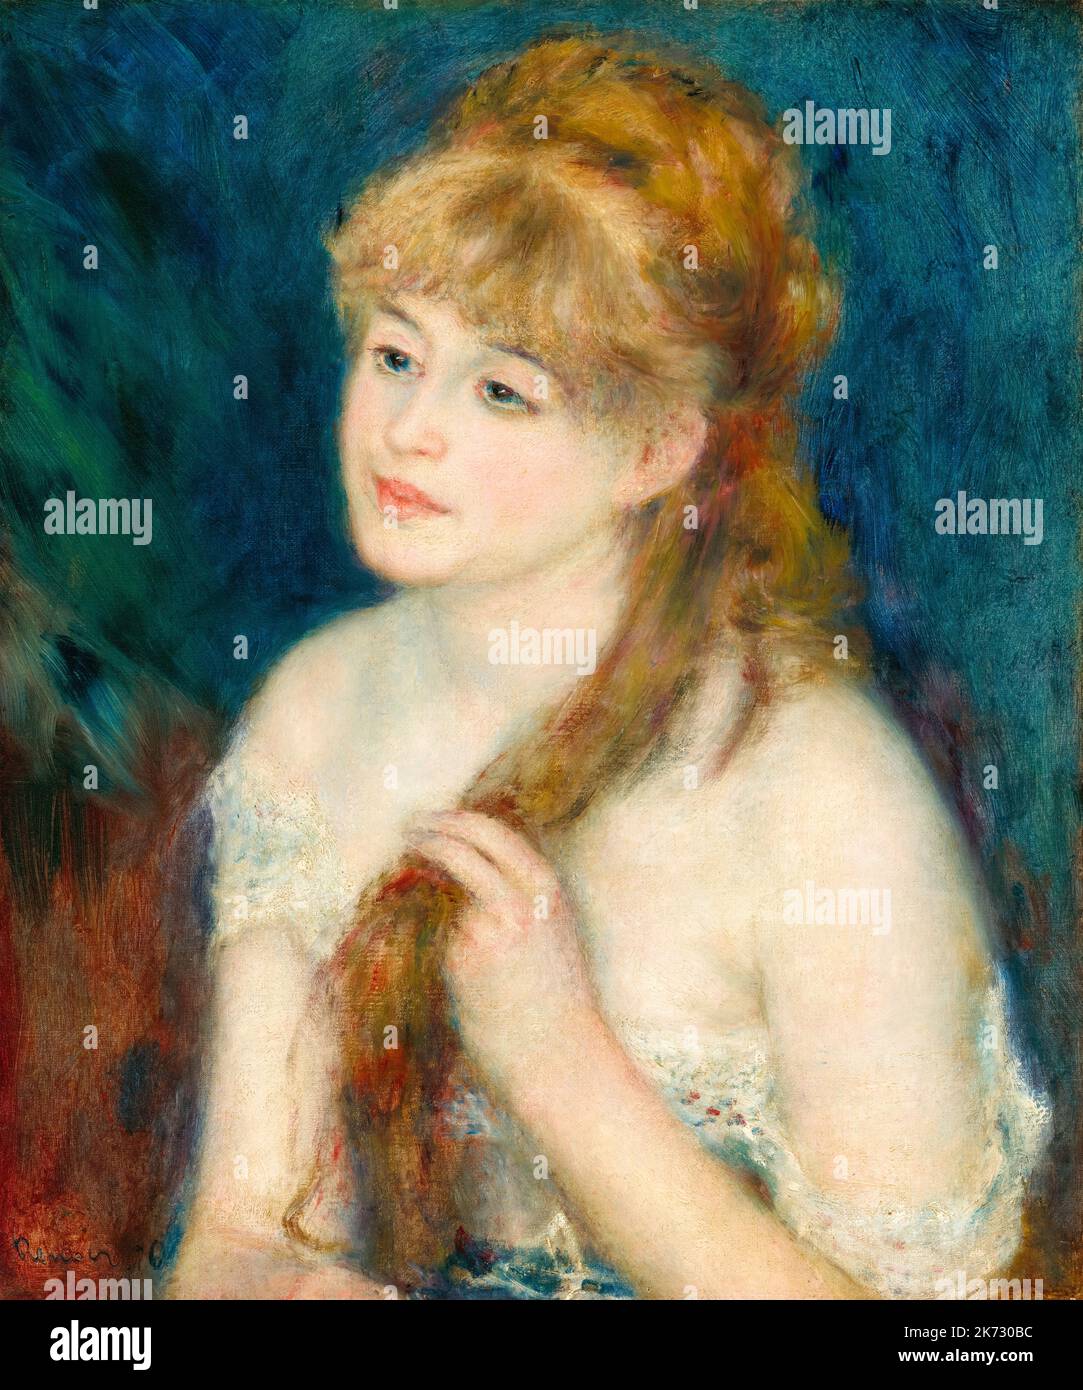 Pierre Auguste Renoir, jeune femme brairant ses cheveux, portrait peint à l'huile sur toile, 1876 Banque D'Images